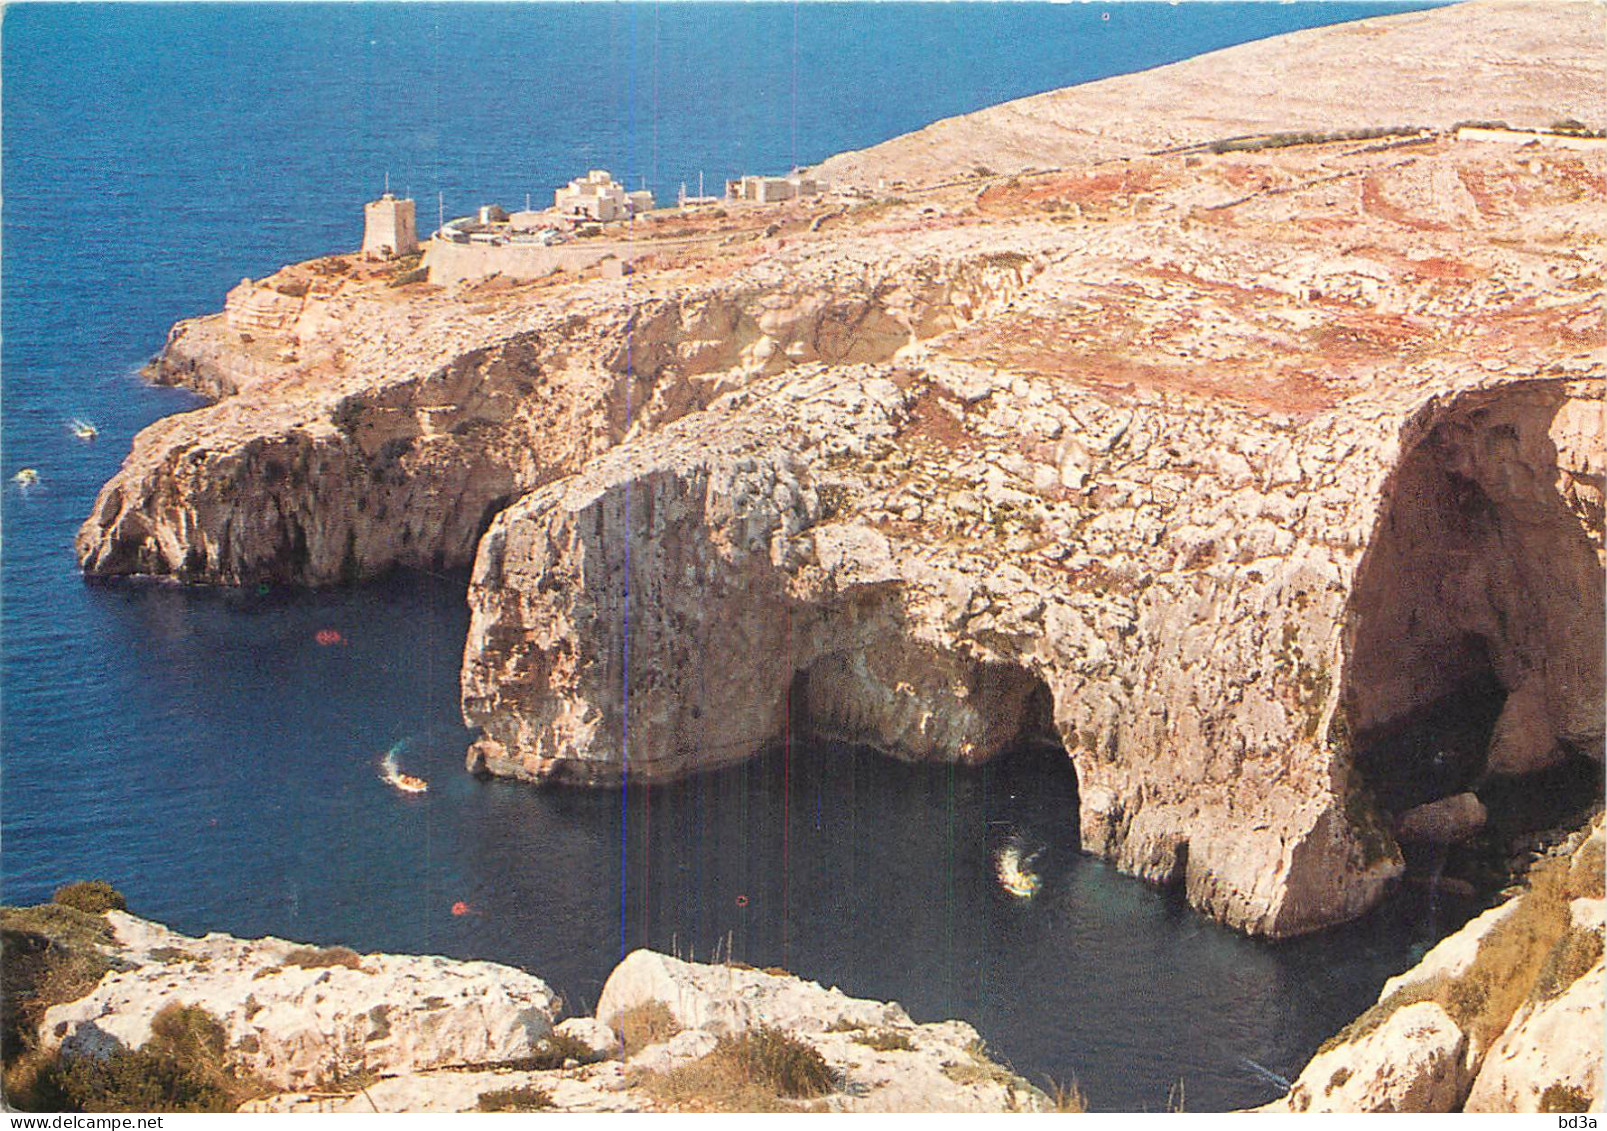  MALTE  MALTA  THE BLUE GROTTO - Malta